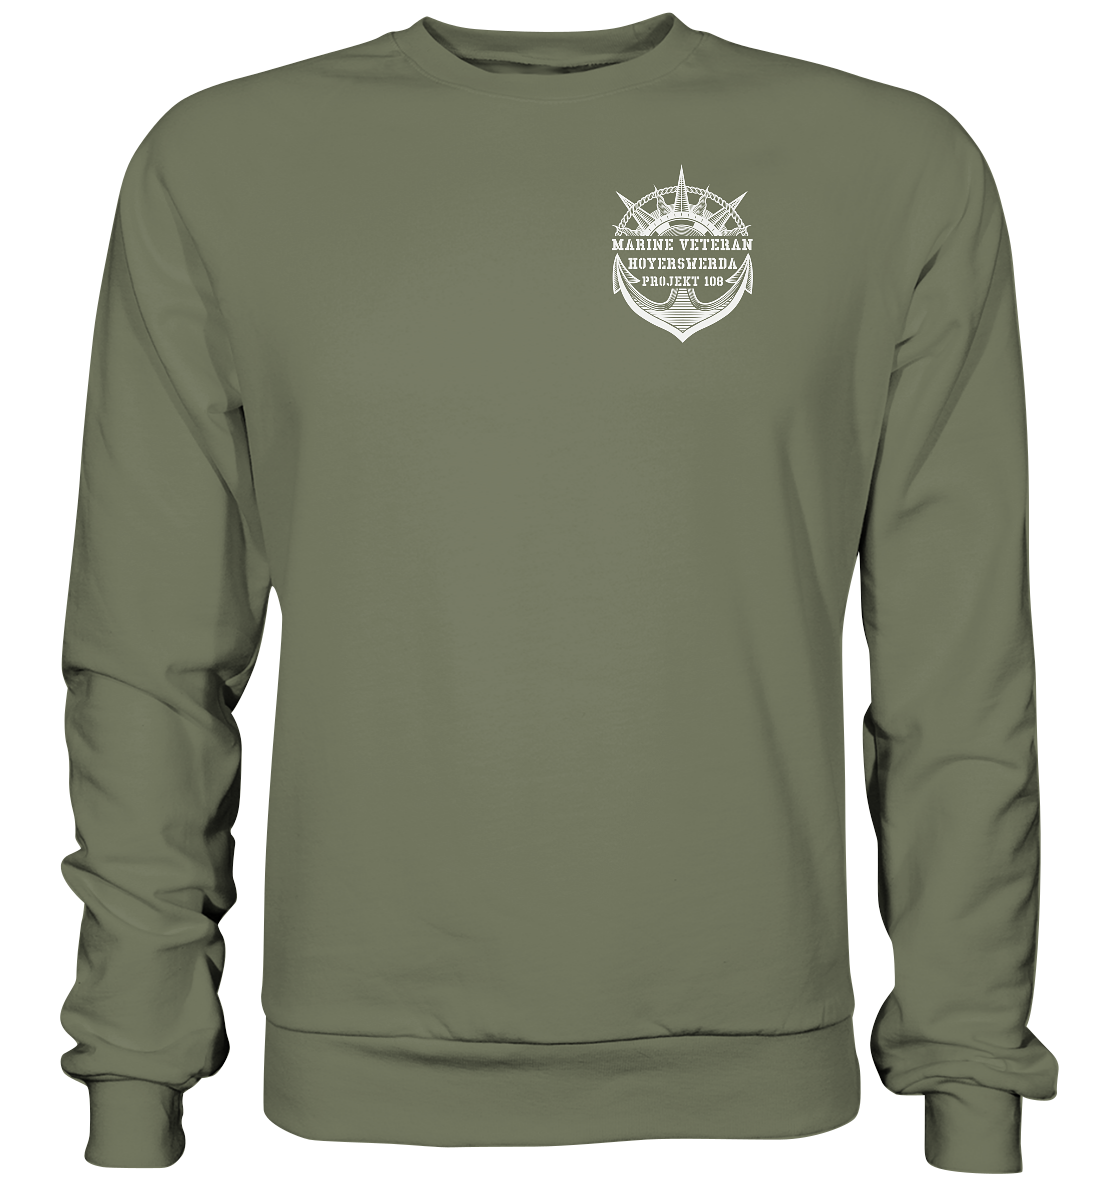 Projekt 108 HOYERSWERDA Marine Veteran Brustlogo - Premium Sweatshirt